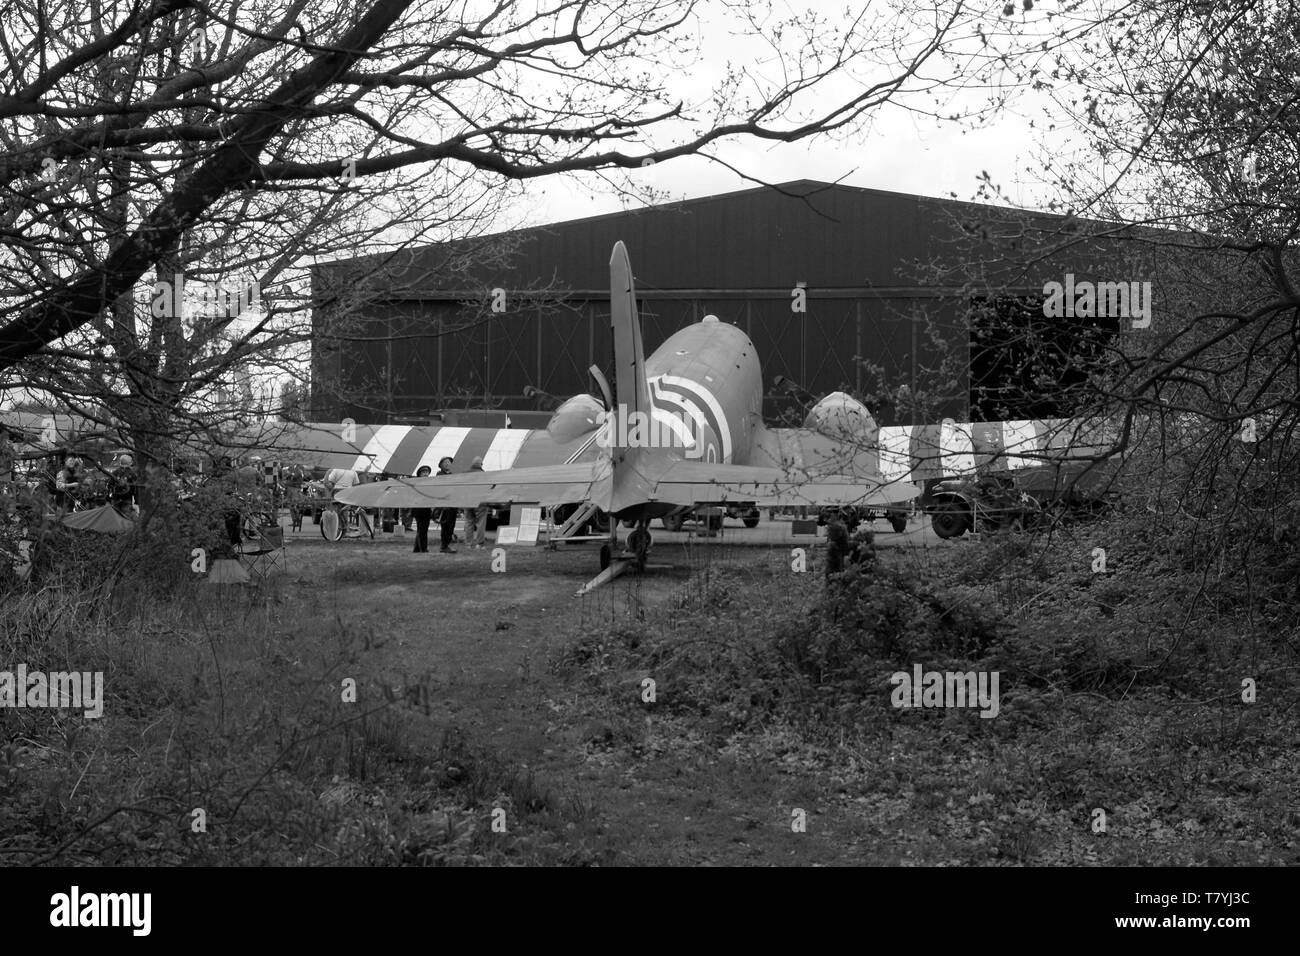 Douglas C-47 Dakota, D-day 1944, British airfield Stock Photo